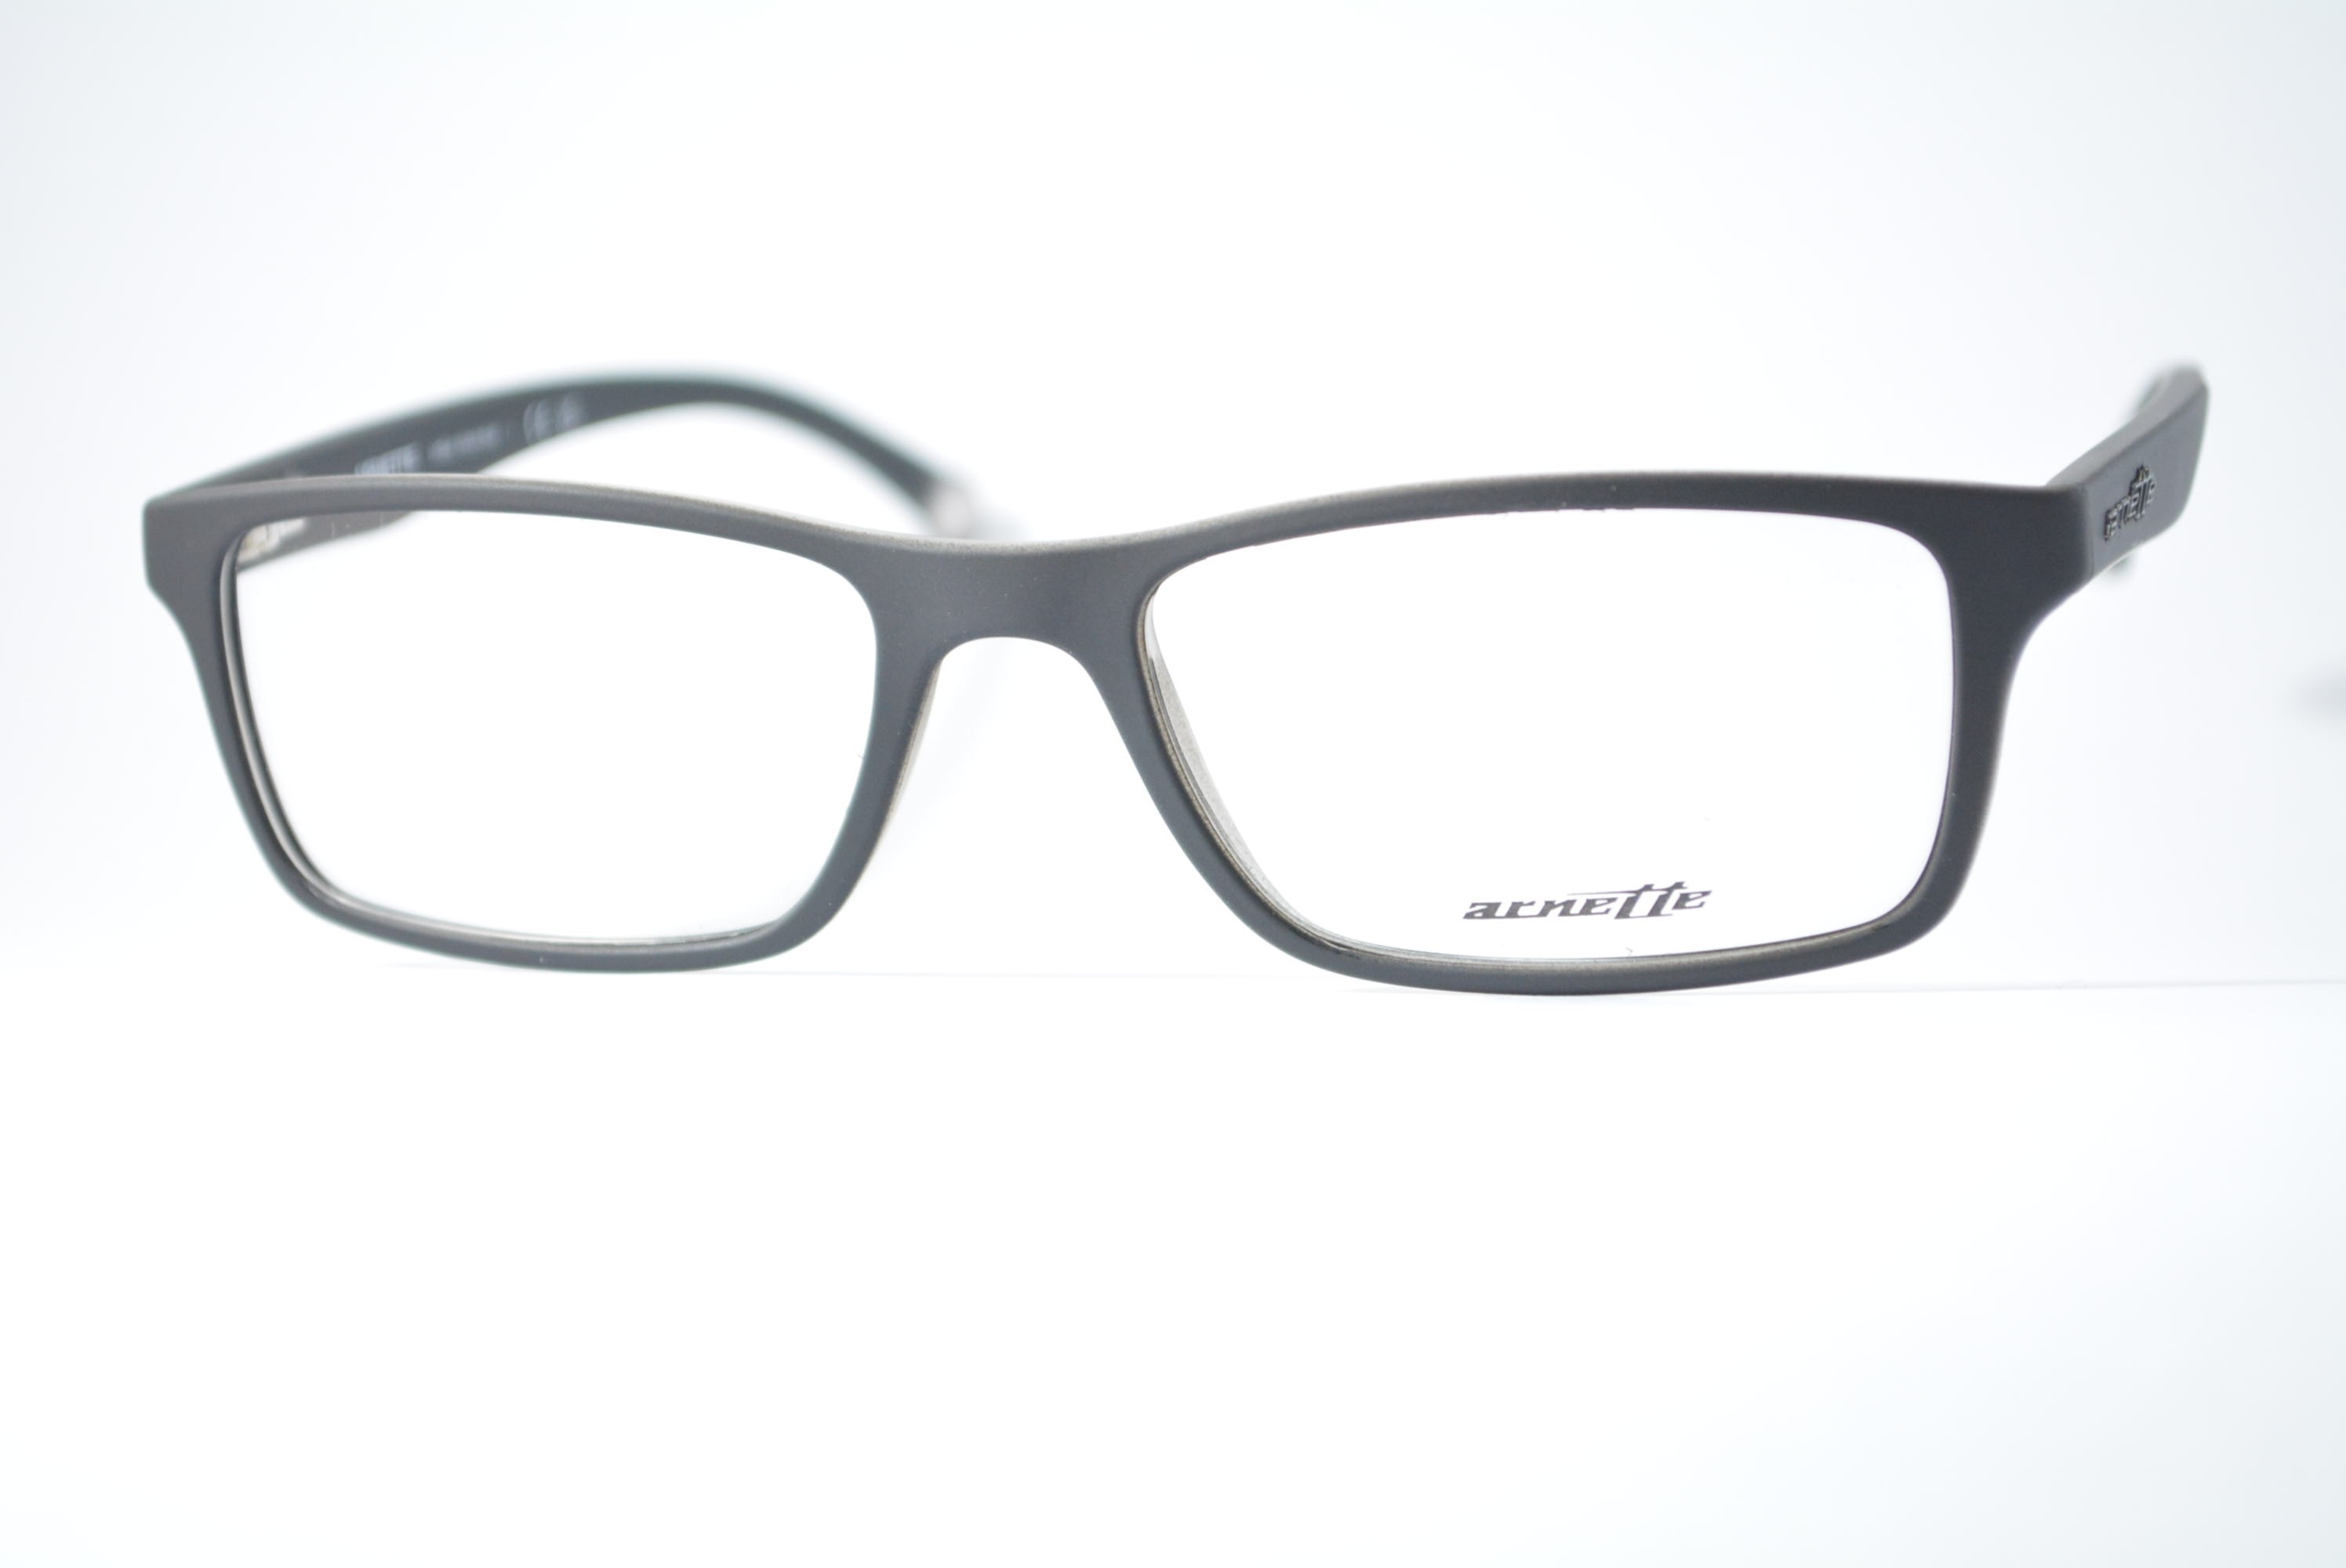 armação de óculos Arnette mod an7073L 2216